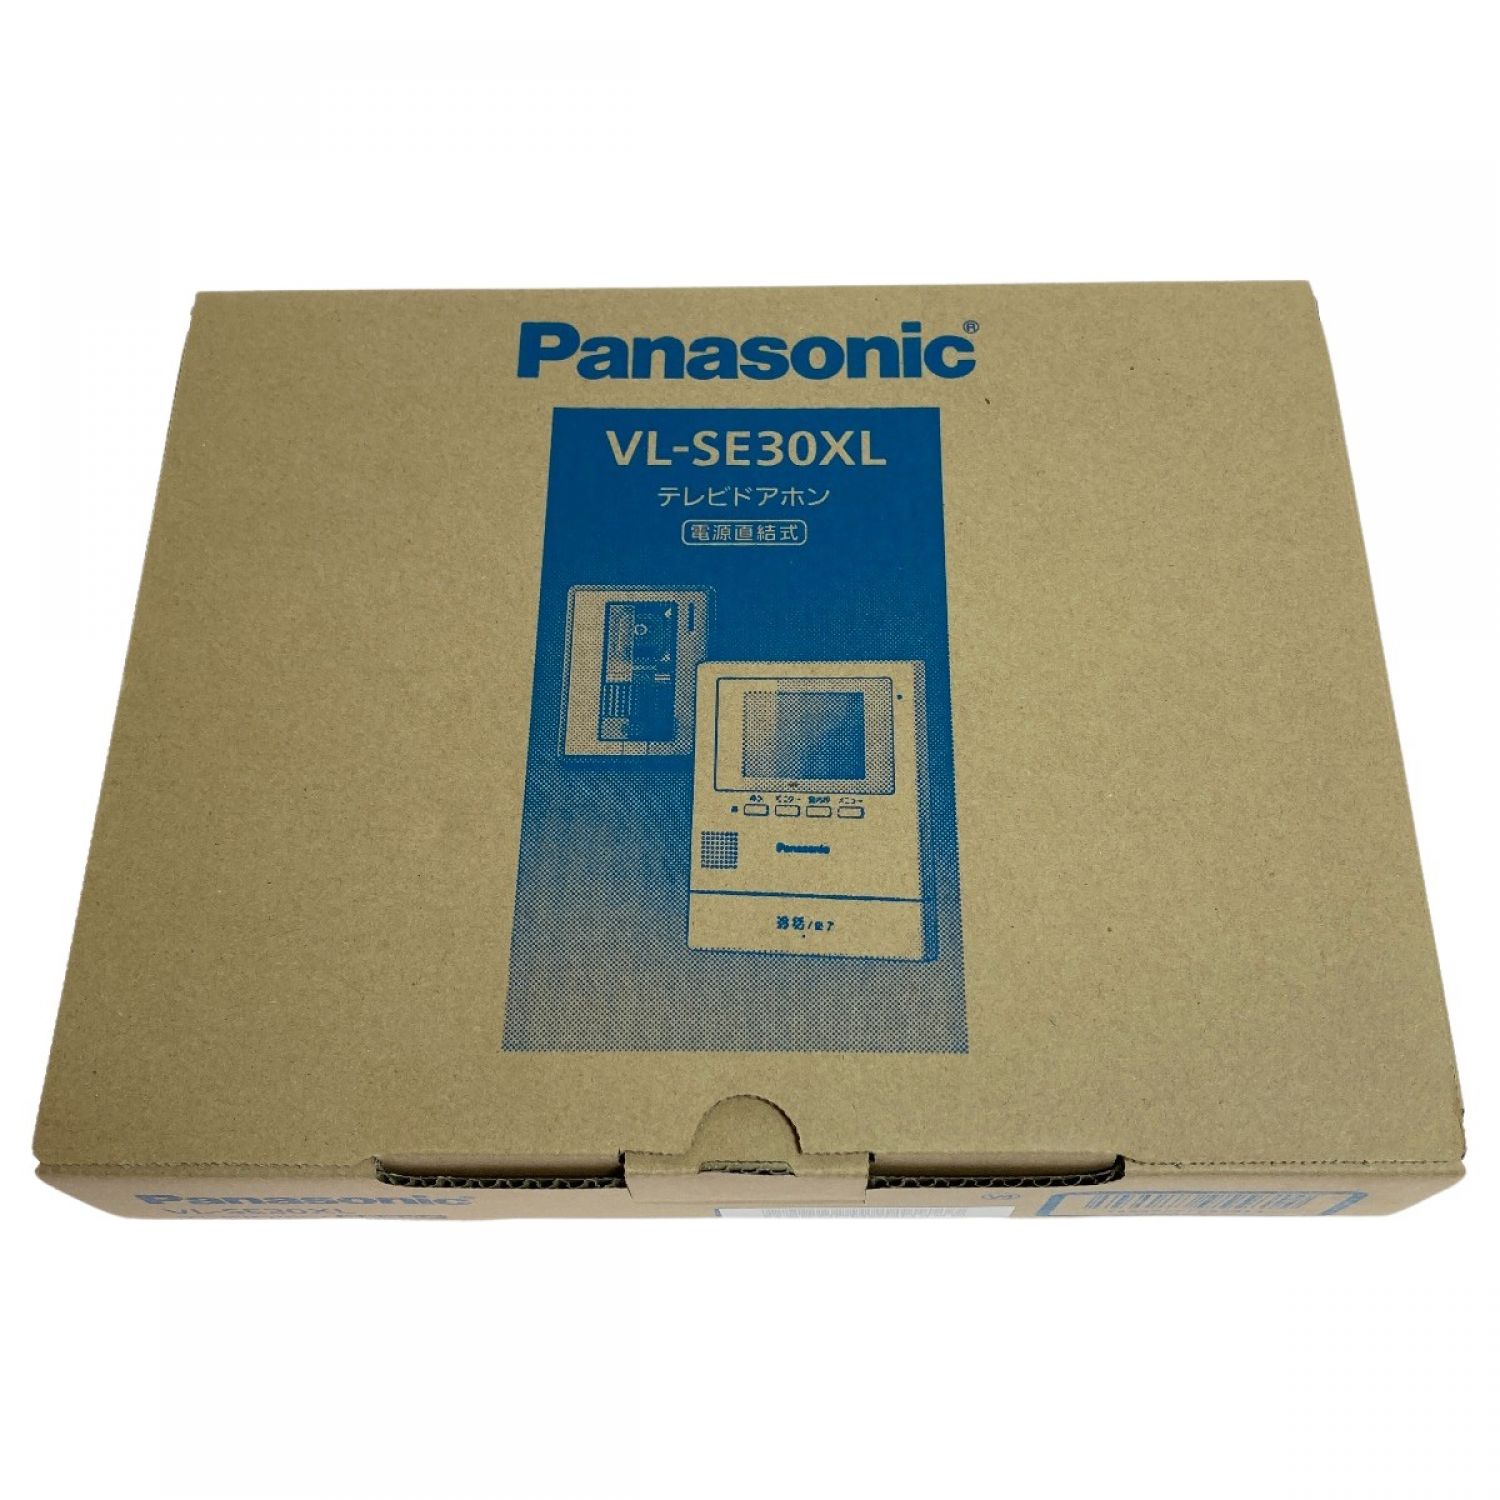 Panasonic VL-SE30XL